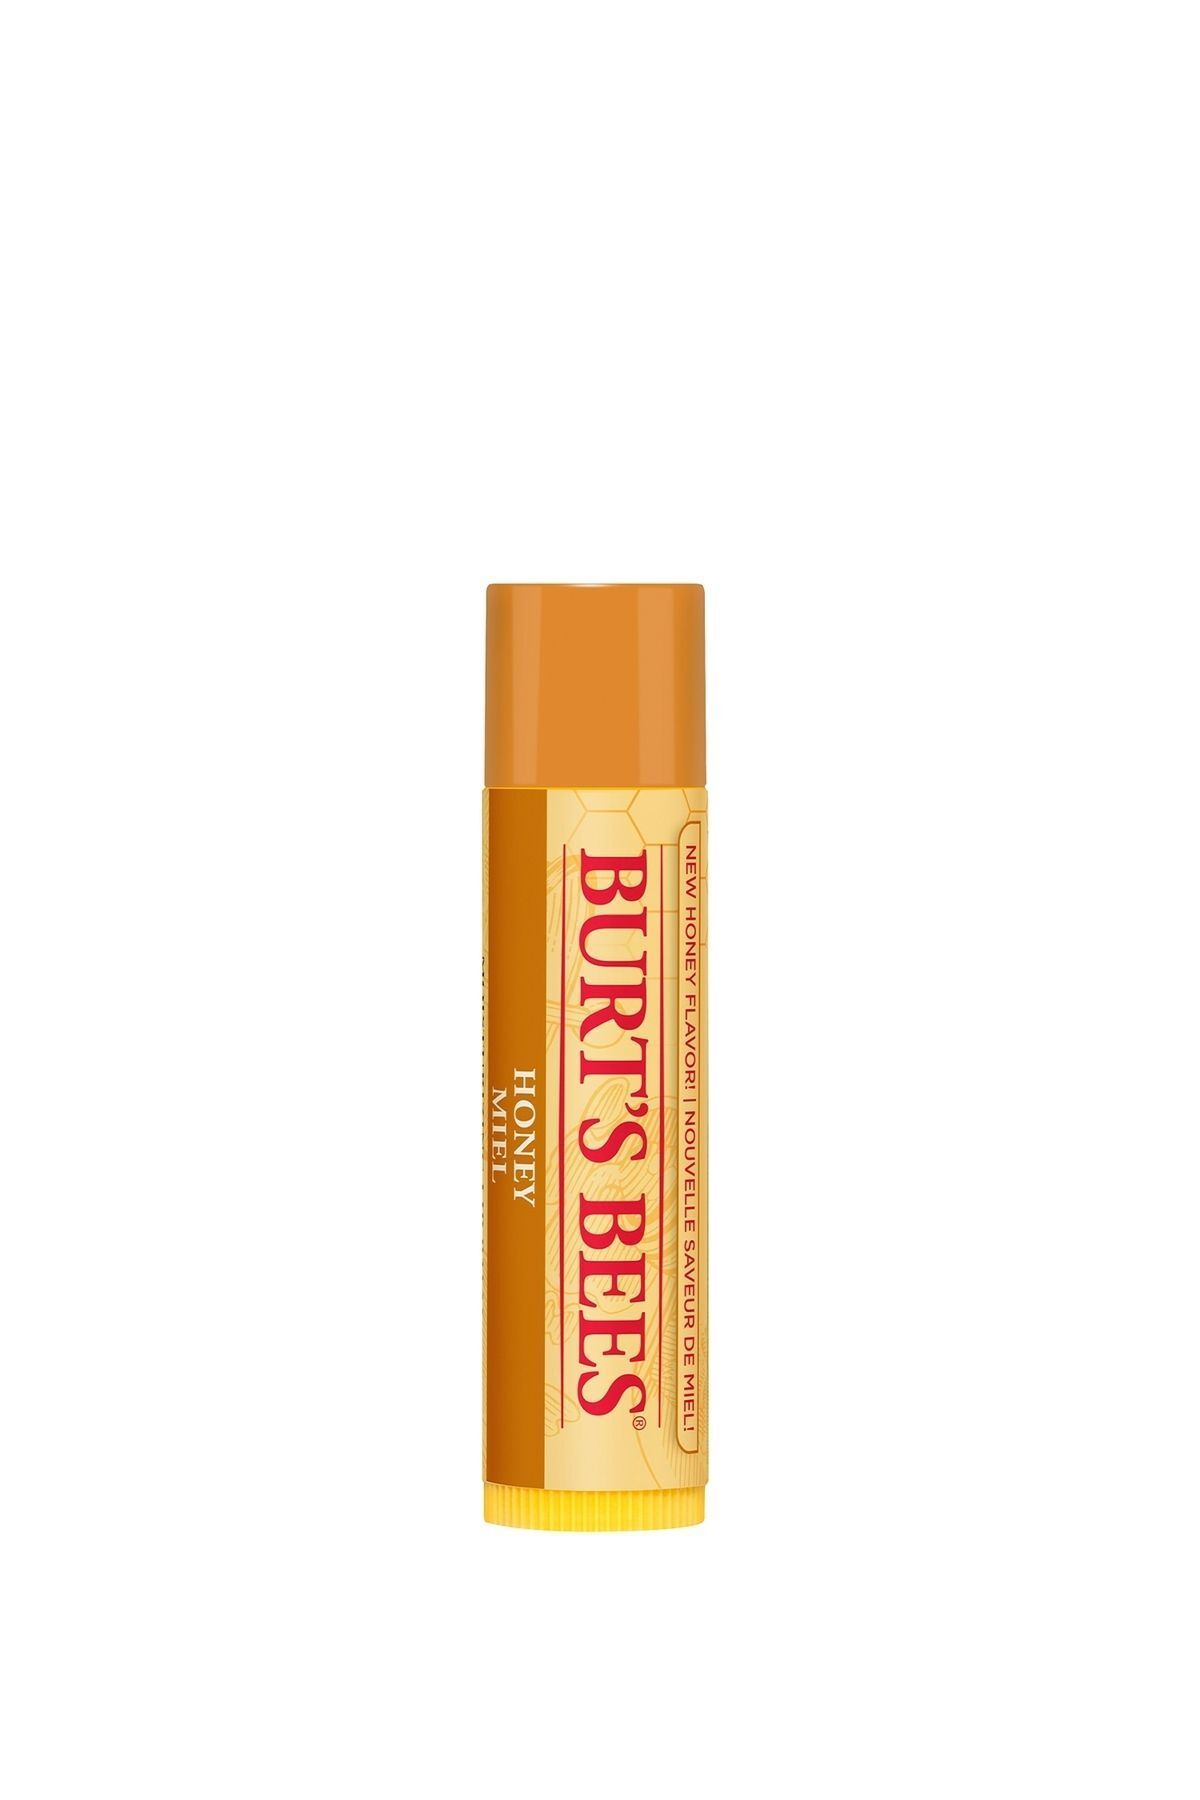 Burt's Bees Bal Aromalı Dudak Bakım Kremi Blister Ambalaj - Honey Lip Balm Blister 4,25 gr